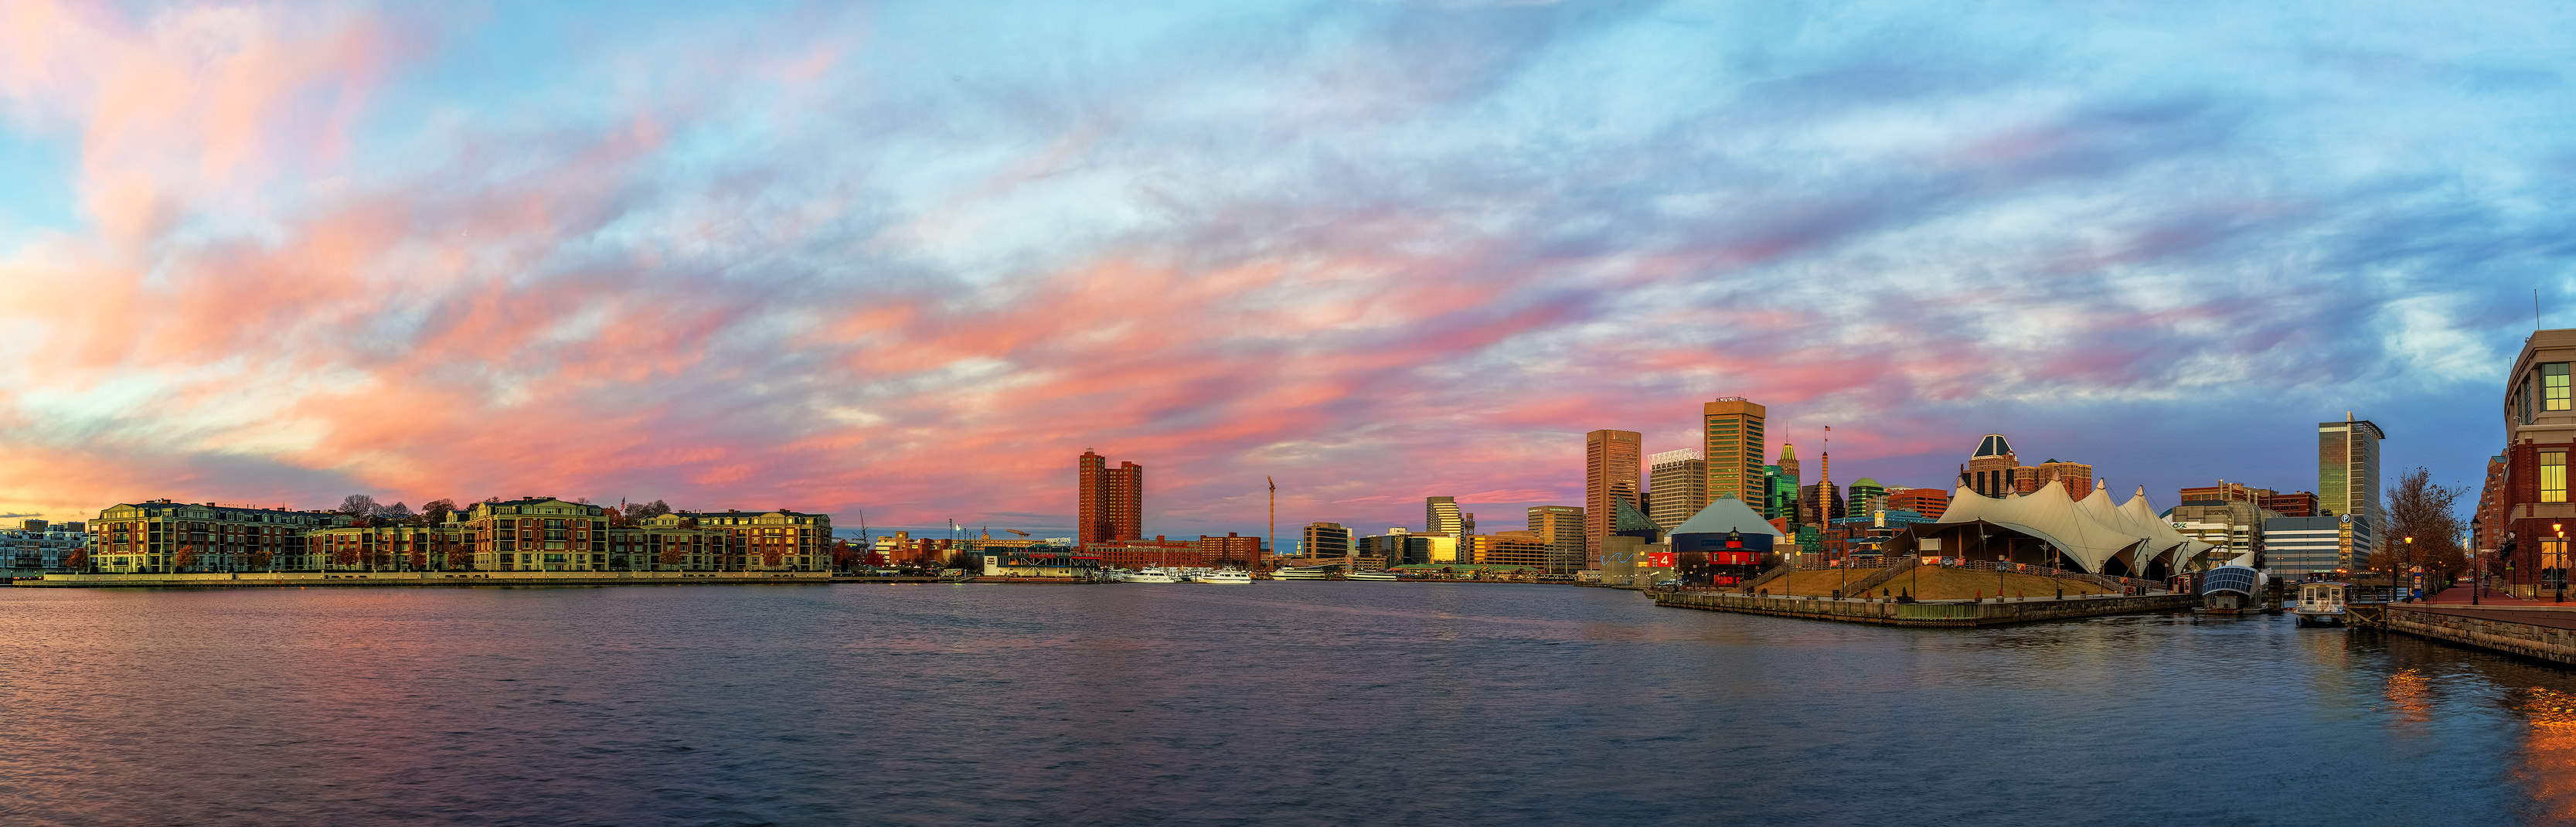 Sunrise At Baltimore's Inner Harbor